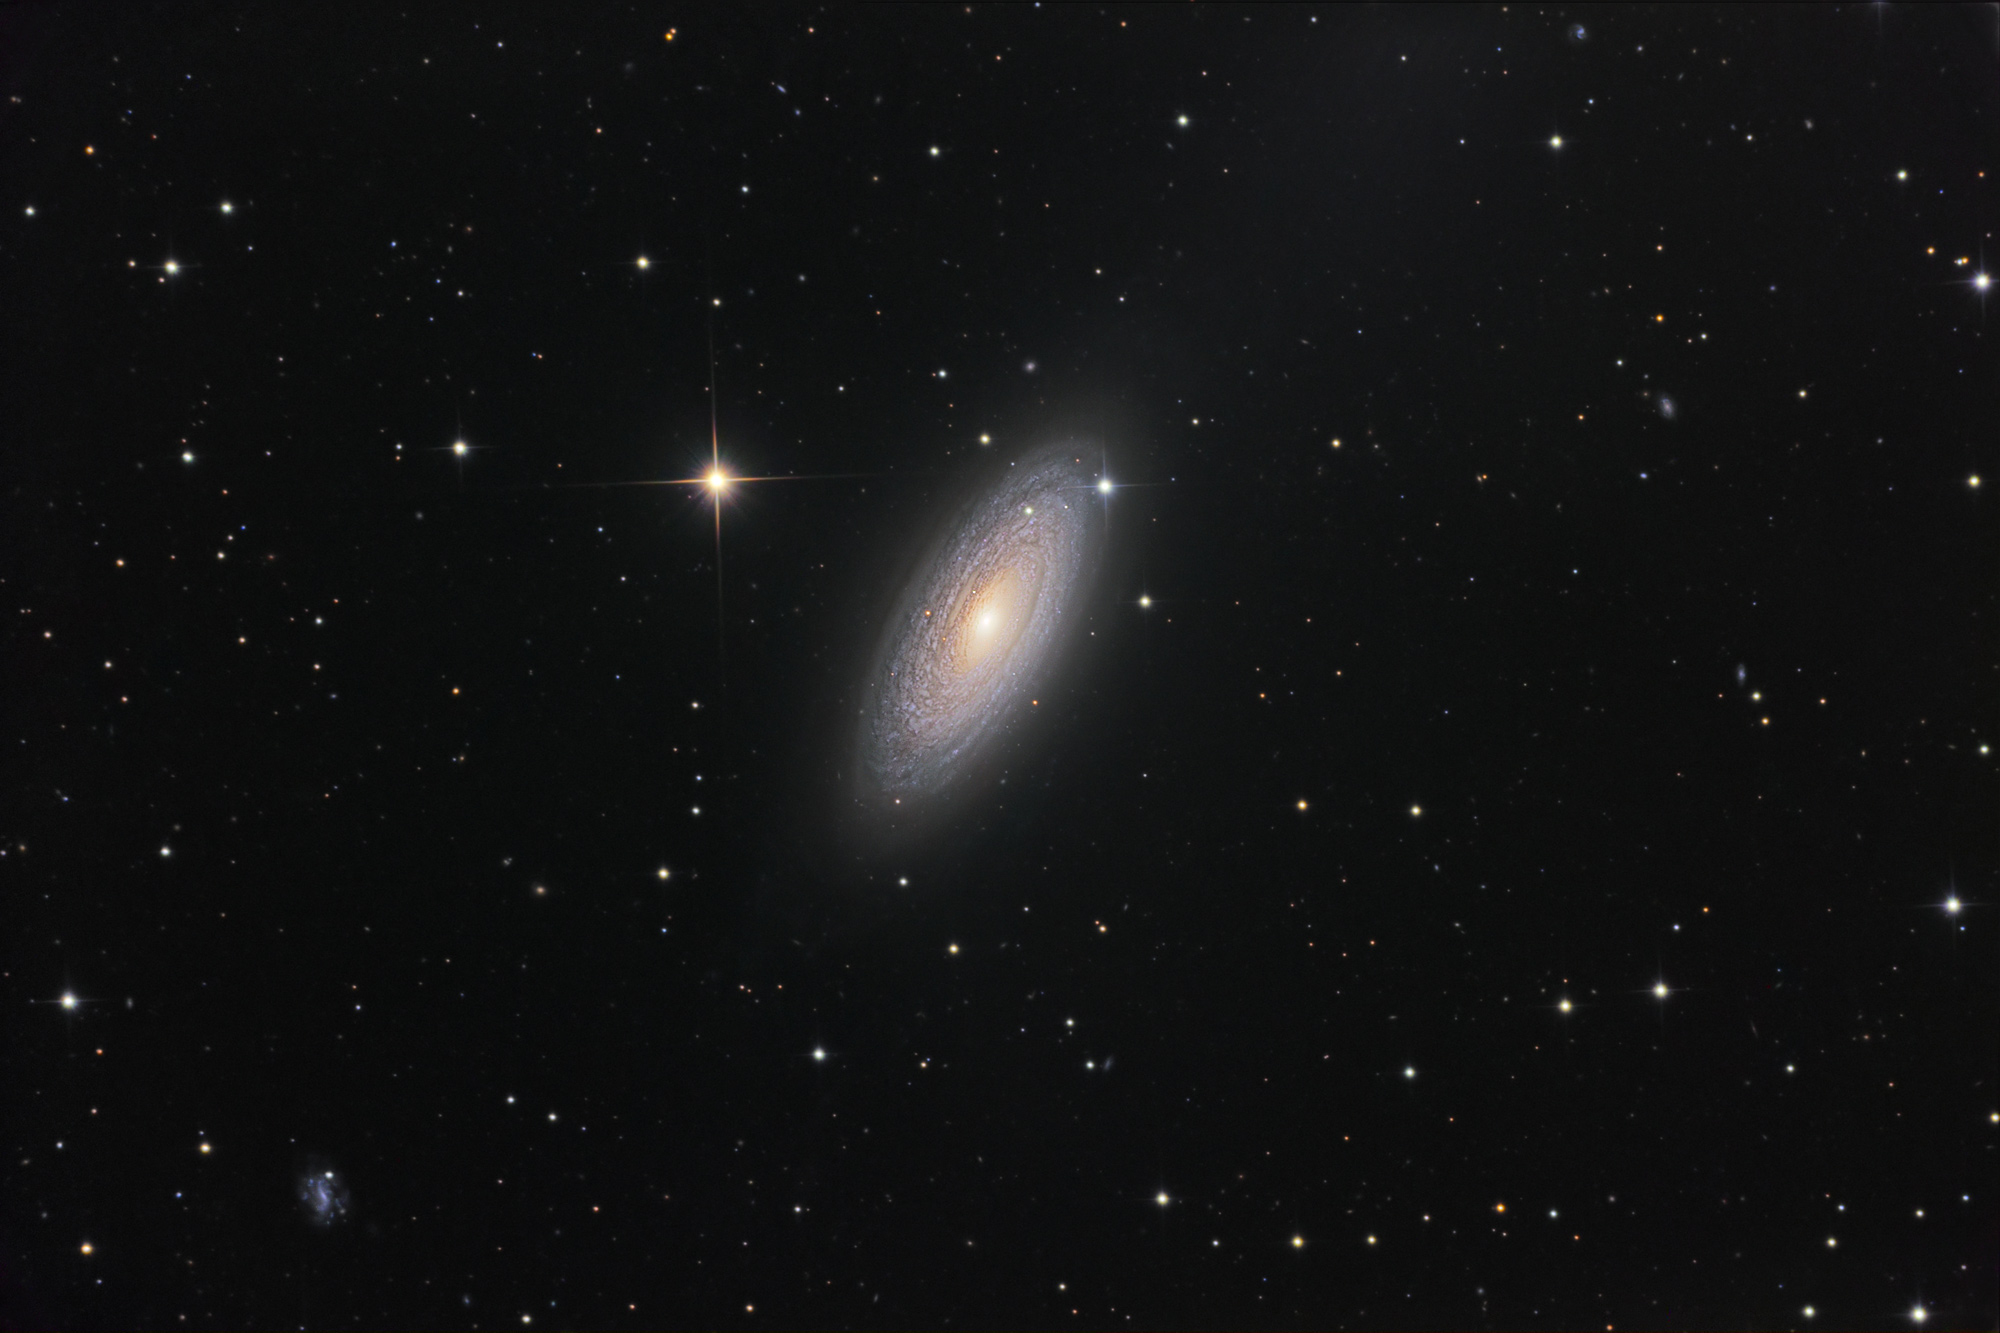 Spiral'naya galaktika NGC 2841